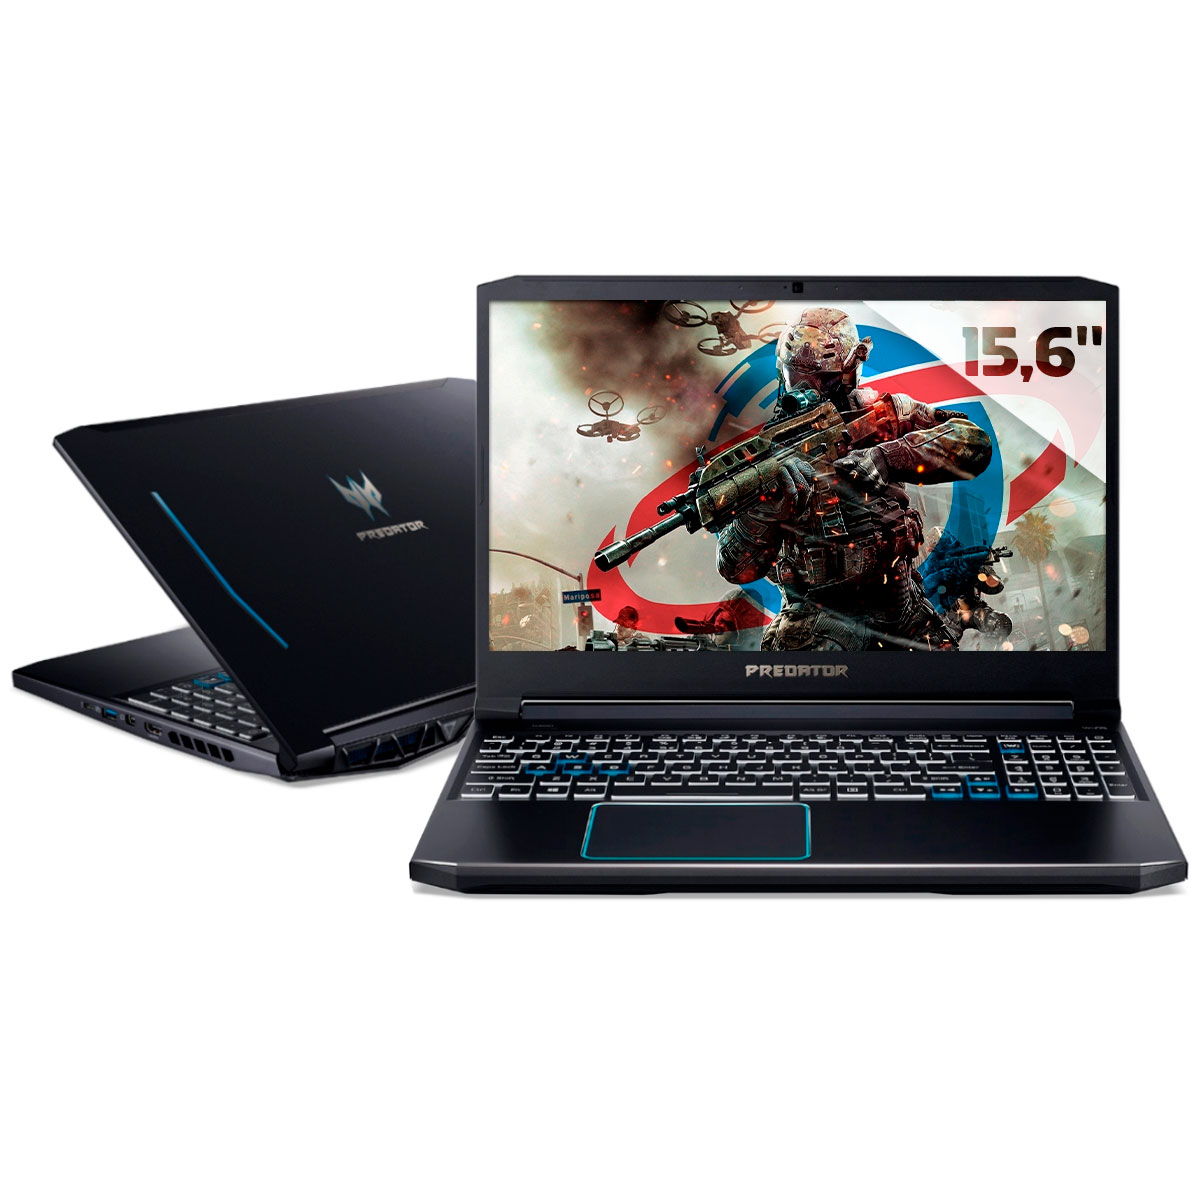 Notebook Acer Gaming Predator Helios 300 - Intel i7 10750H, 16GB, SSD 1TB, GeForce RTX 2060 6GB, Tela 15.6